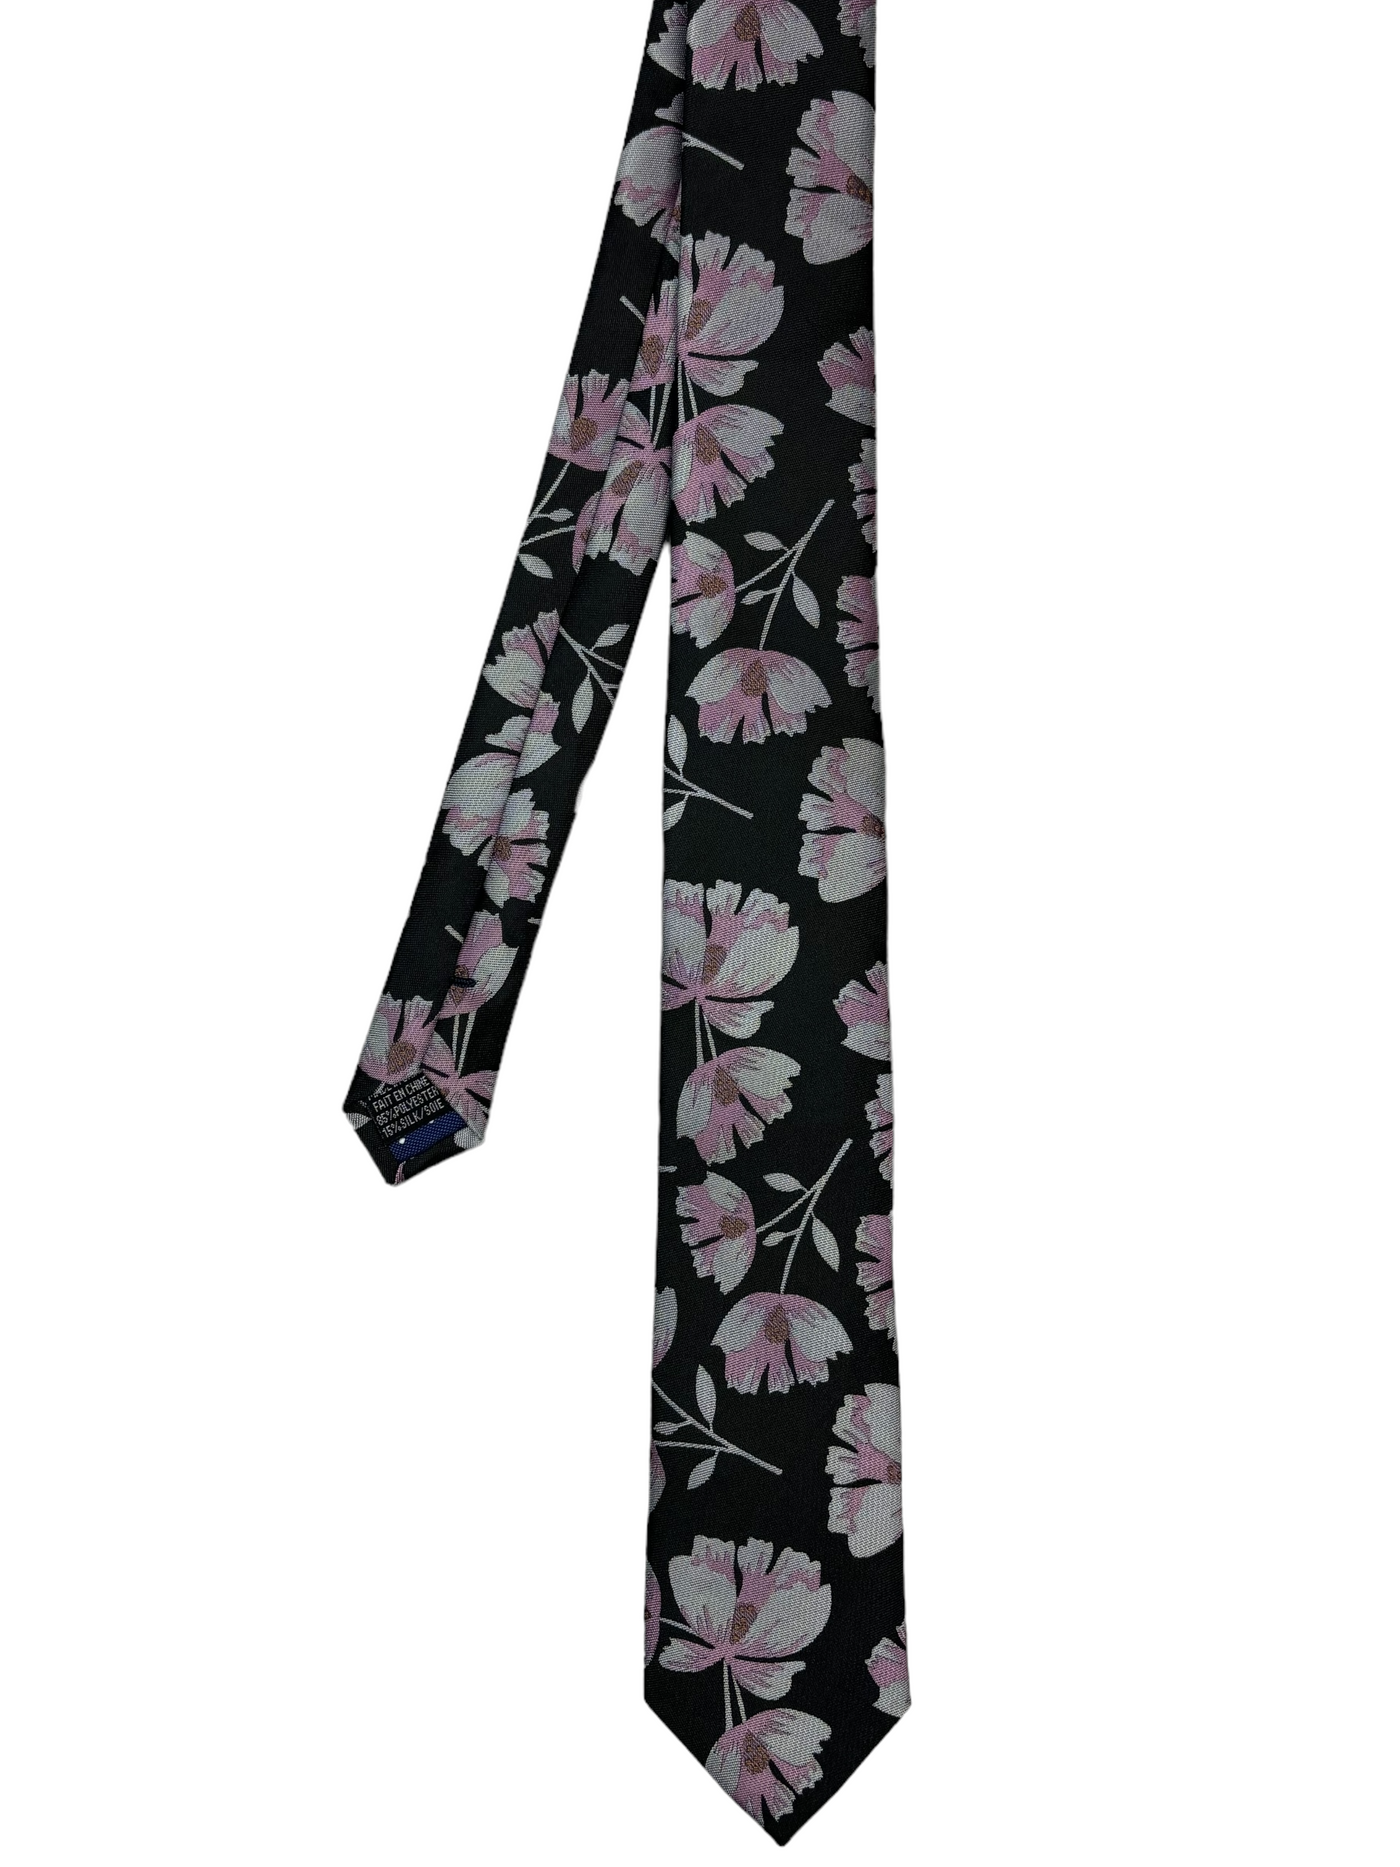 Cravate noire à motif floral rose